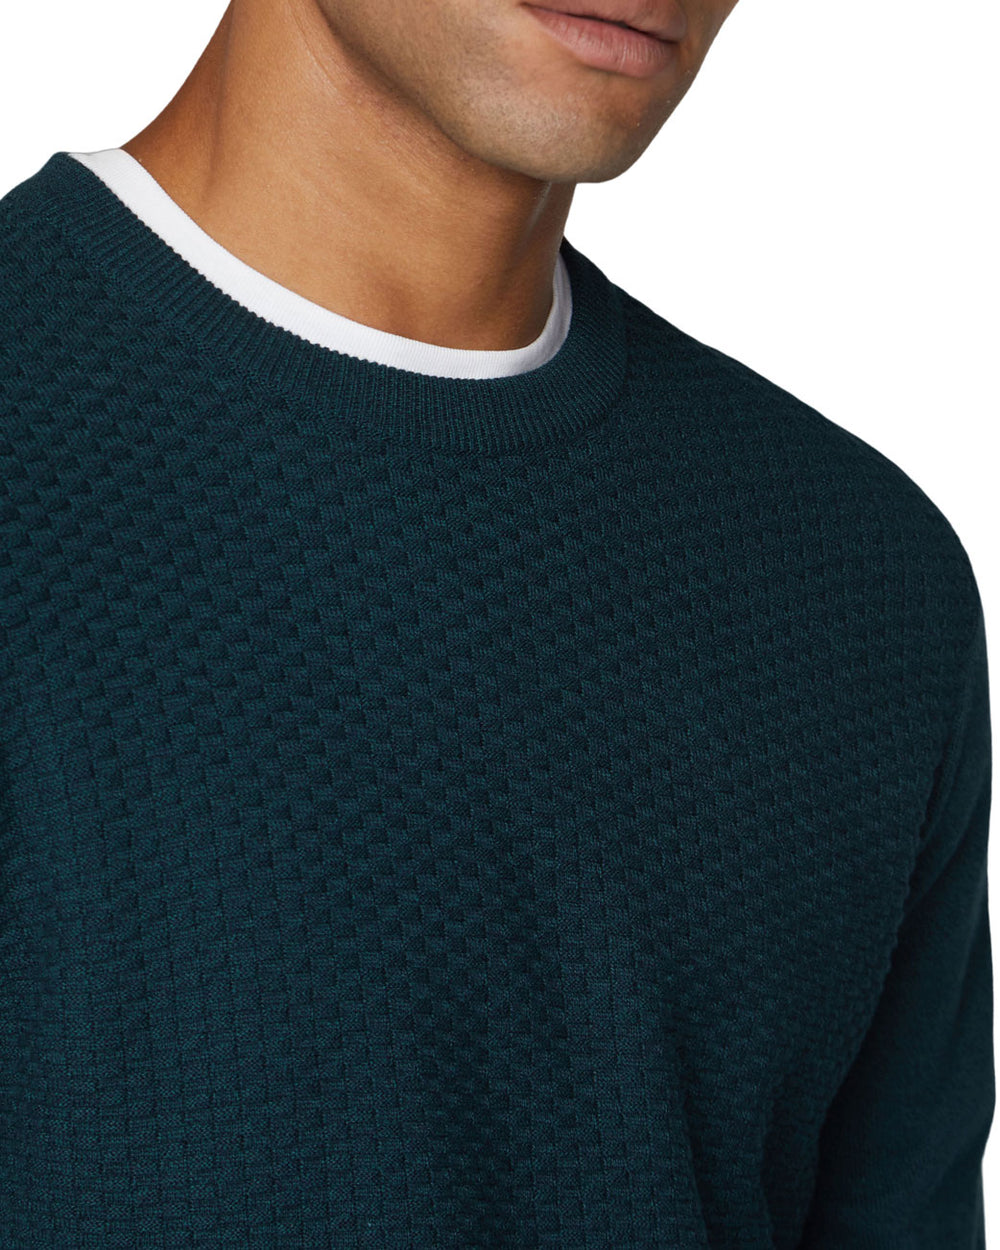 Textured Knit Crewneck Sweater - Trekking Green